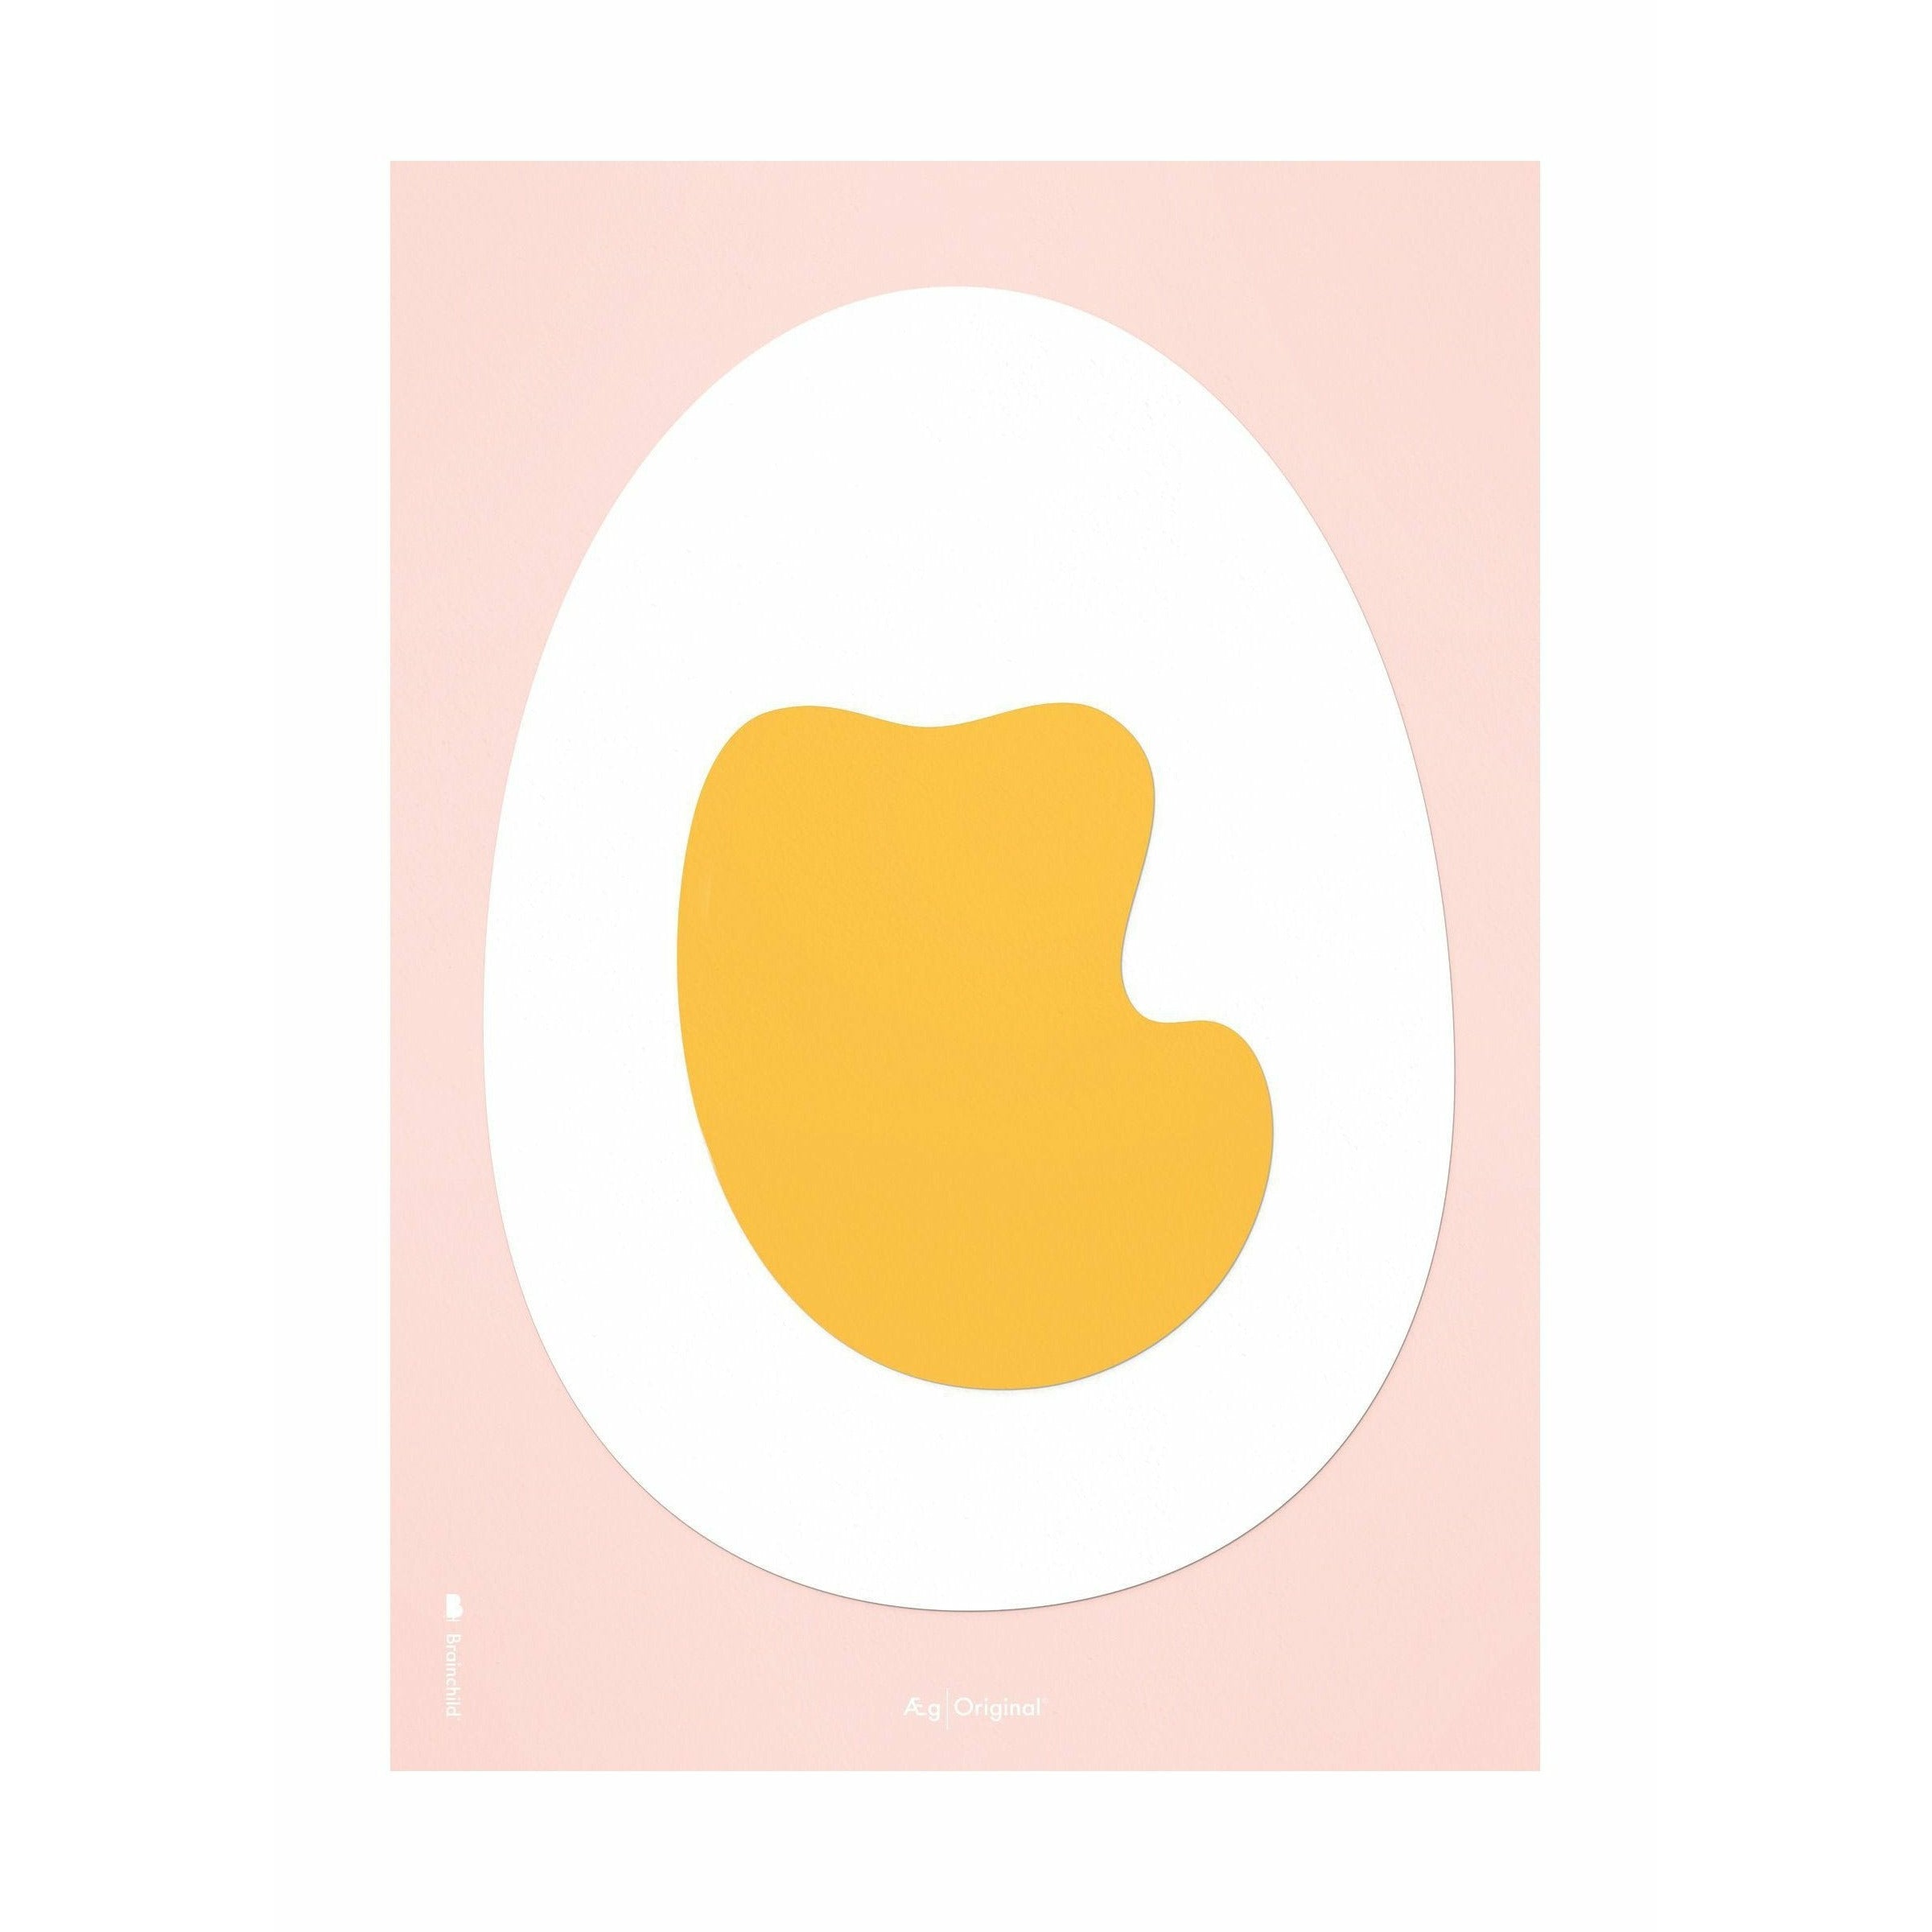 Brainchild Klipplakat på ægpapir uden ramme 30 x40 cm, lyserød baggrund